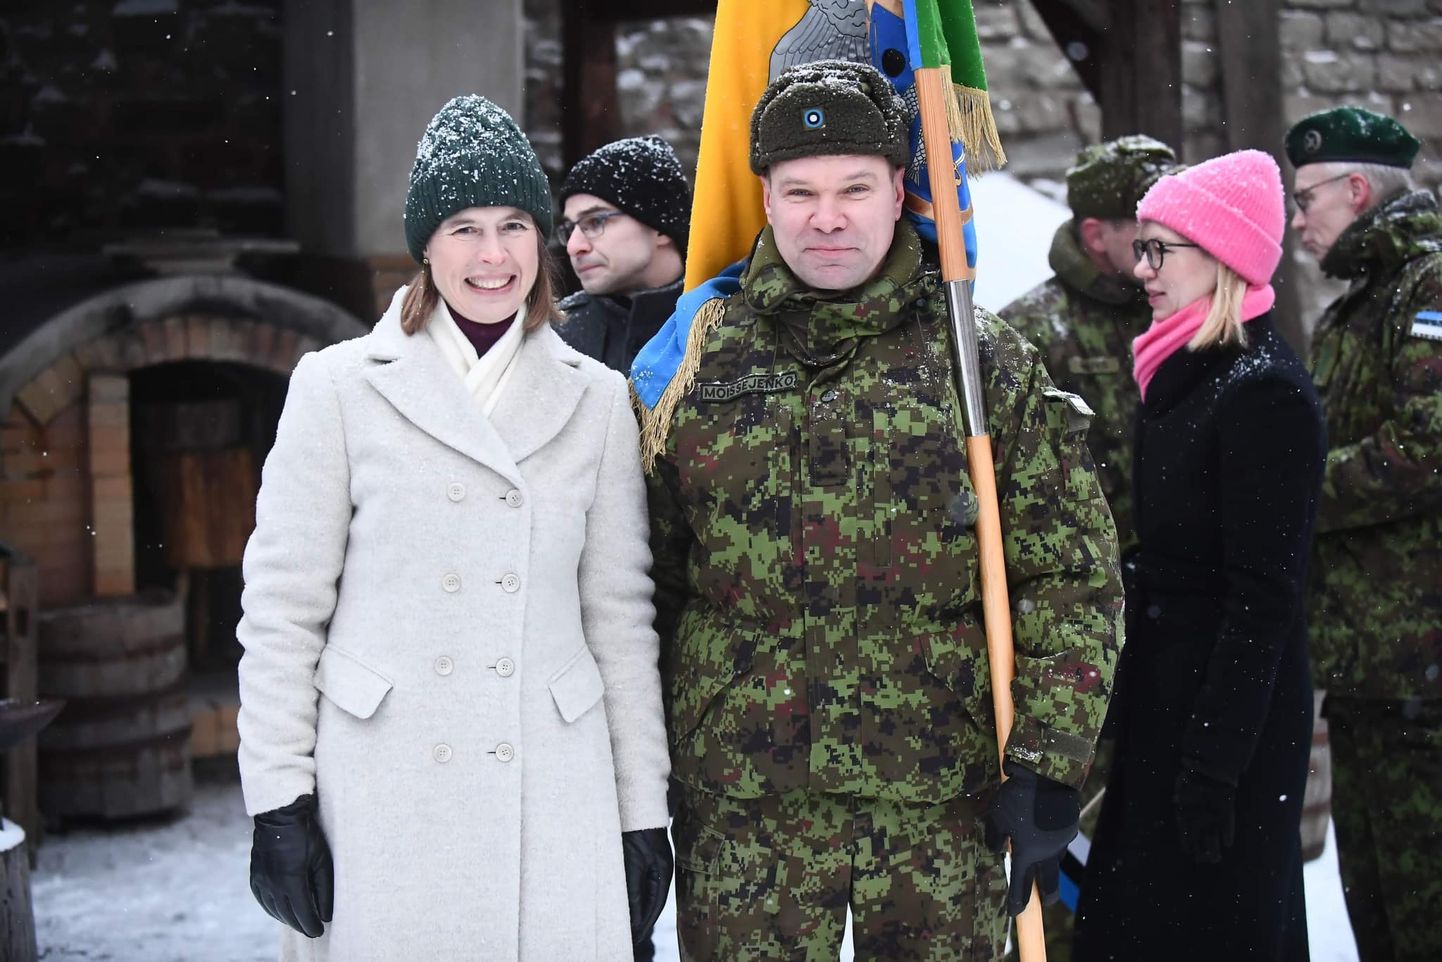 В этом году утром на церемонии поднятия эстонского флага в Нарвском замке в день рождения Эстонии, 24 февраля, Александр Моисеенко был запечатлен на снимке вместе с президентом Керсти Кальюлайд.